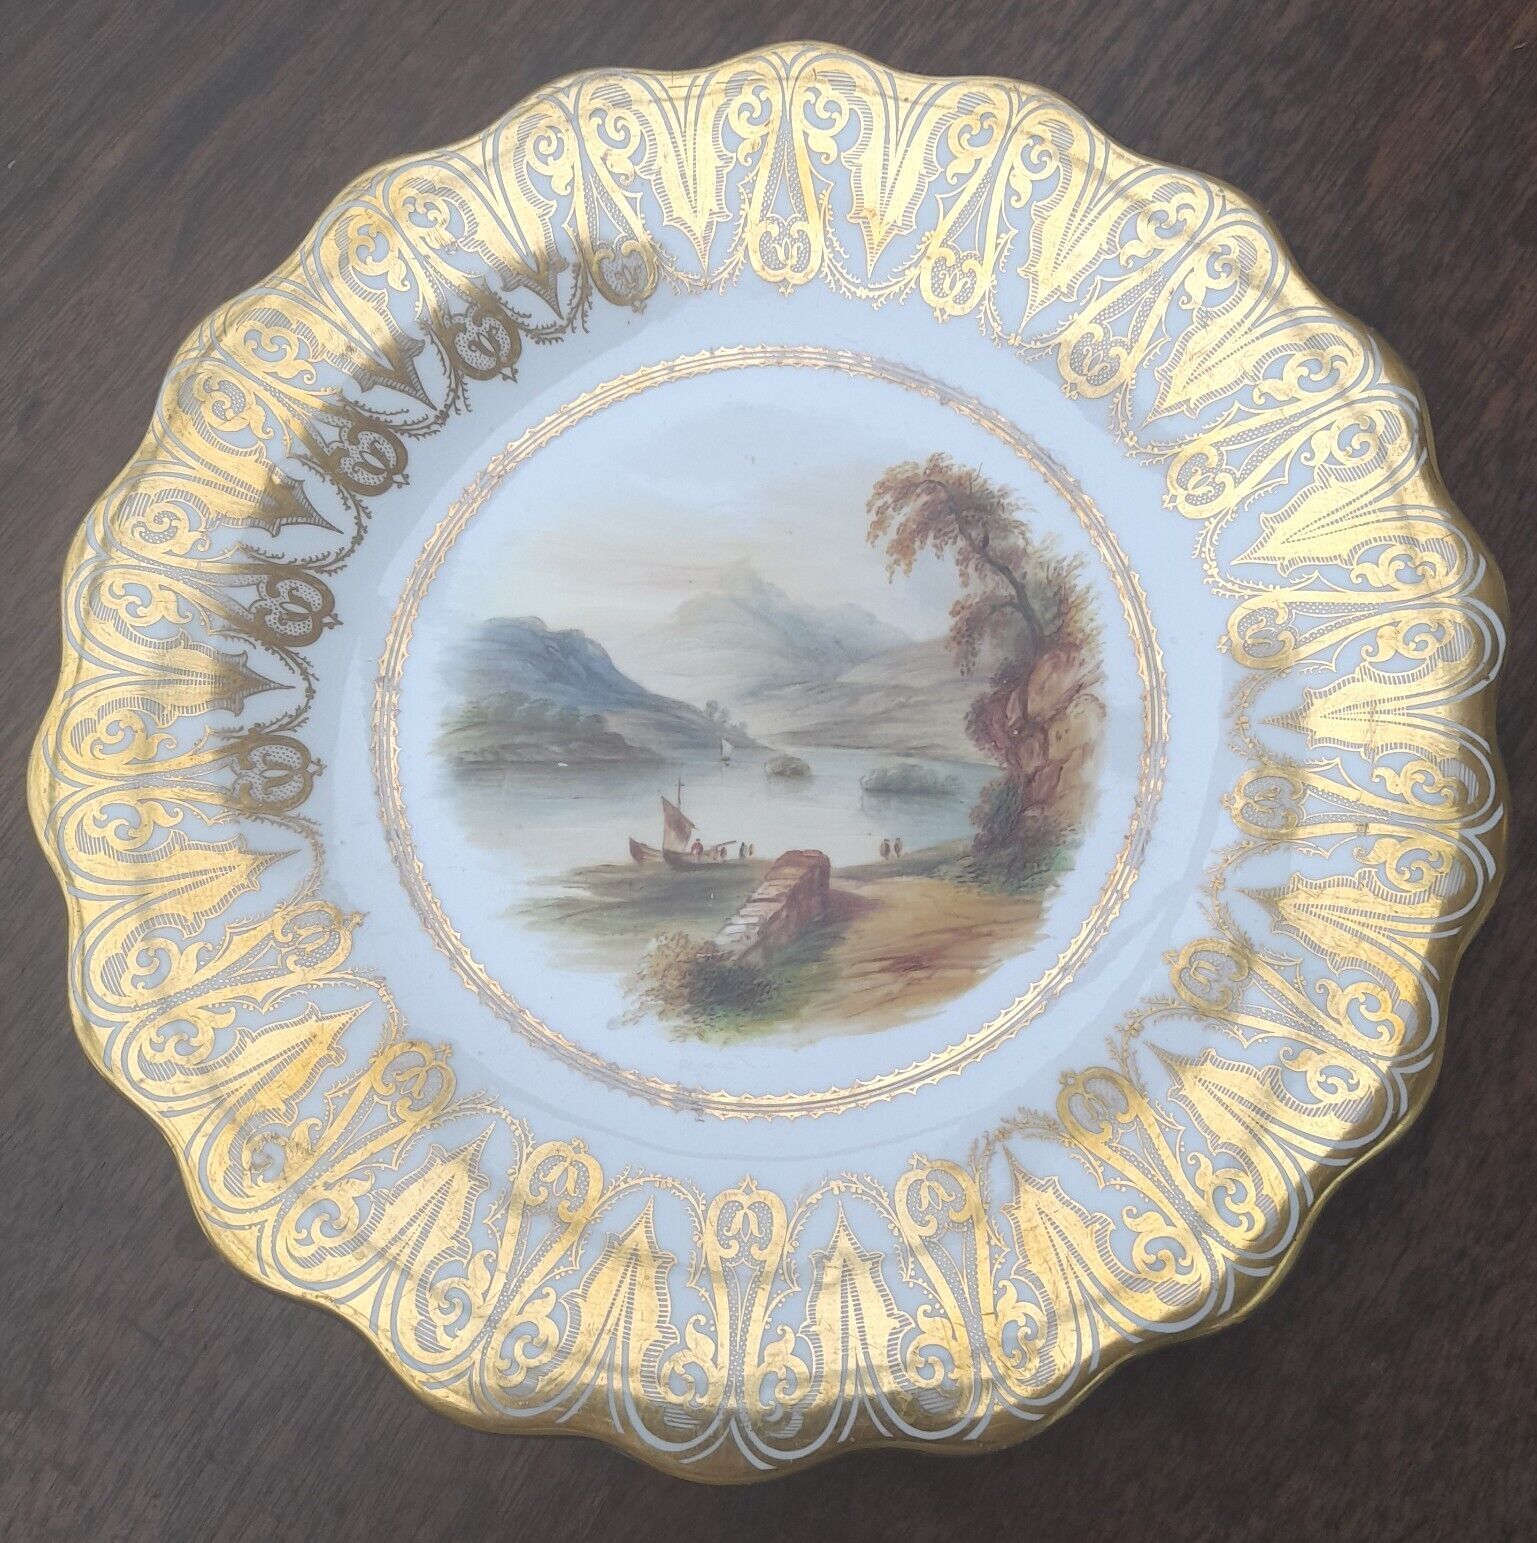 Antique Porcelain Dessert Plate Hand Painted Landscape ornate gilded border